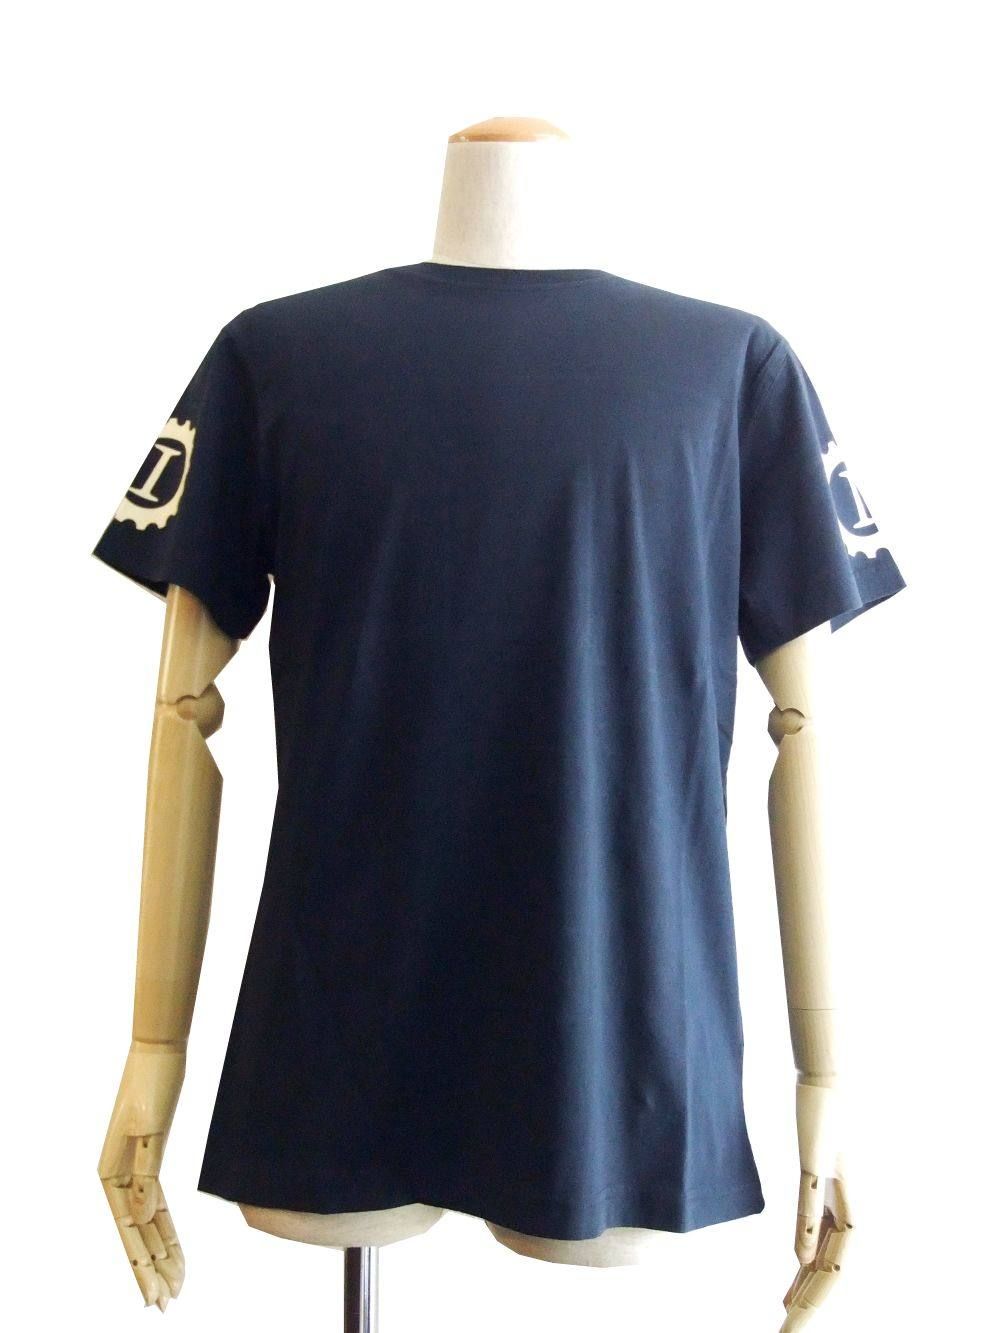 ハイドロゲンABラインウエスタンシャツSサイズmade in Italy